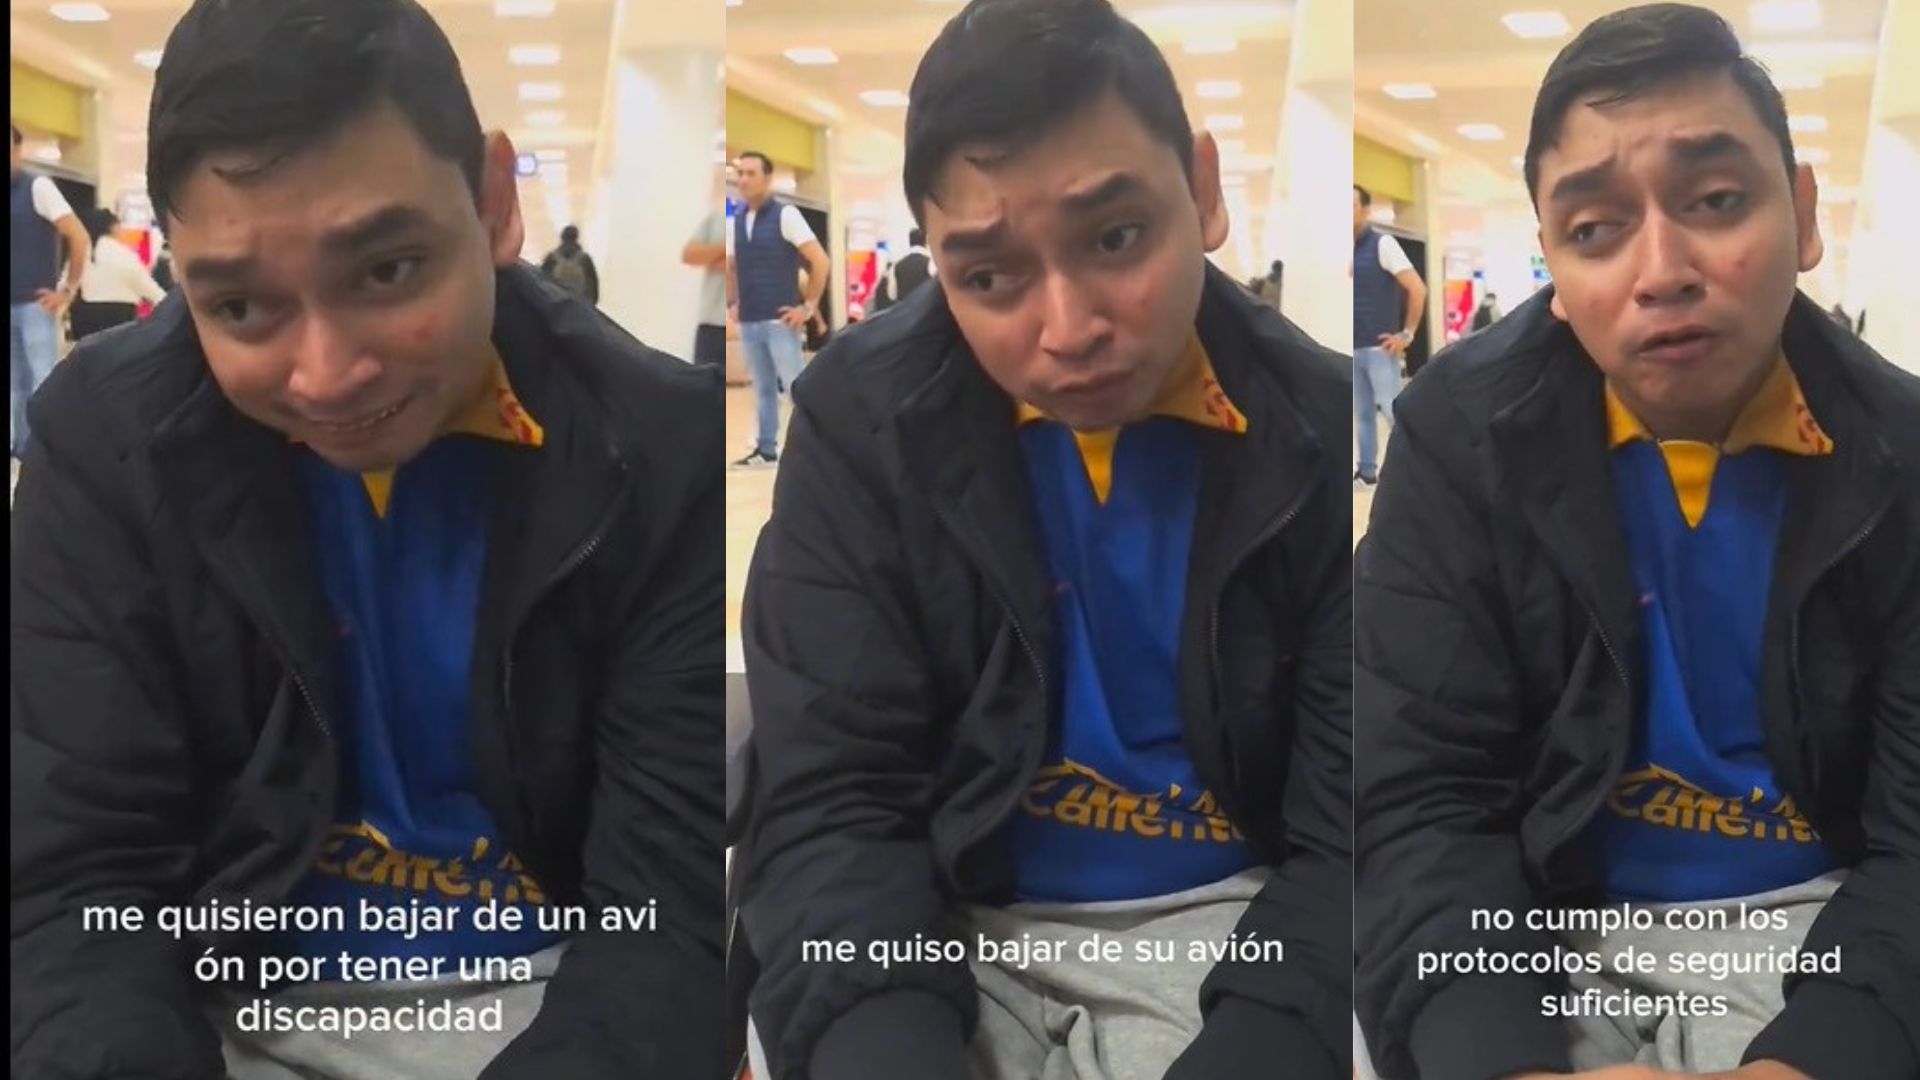 [VIDEO] Discriminan a joven en aerolínea por su discapacidad